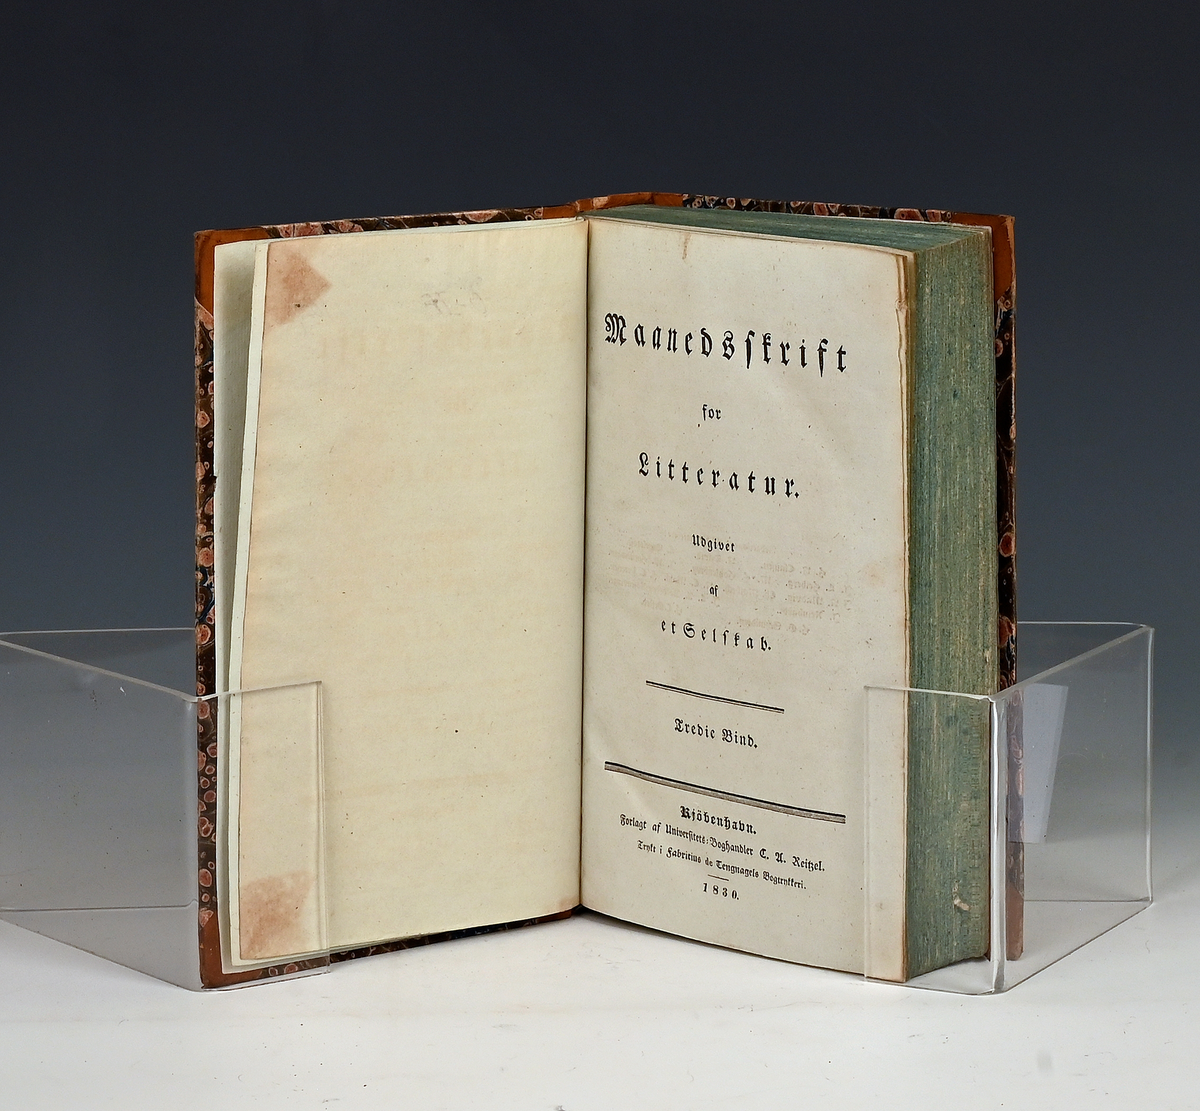 Maanedsskrift for litteratur. Tredie bind. Kbhv. 1830.